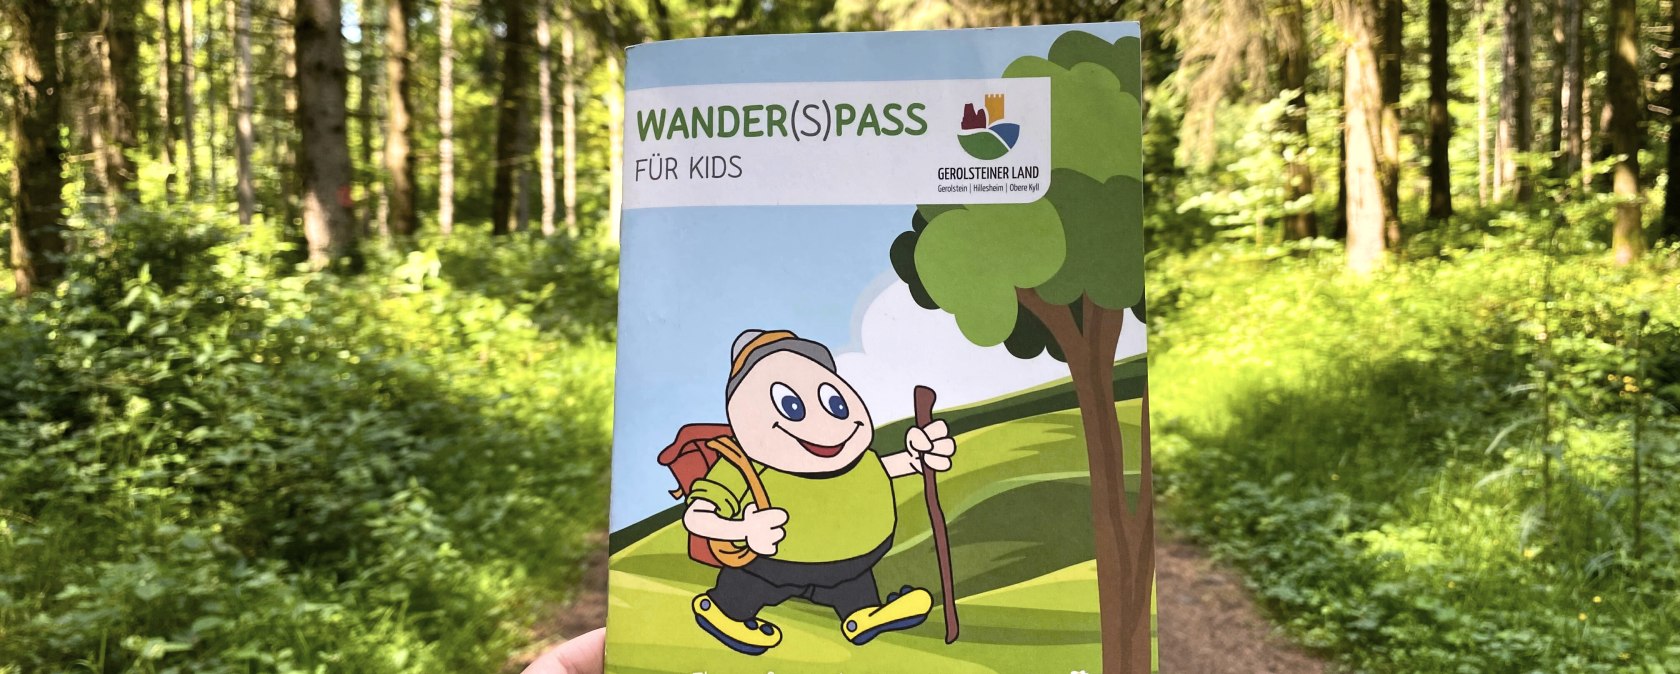 Wanderweg mit Wanderpass, © Touristik GmbH Gerolsteiner Land